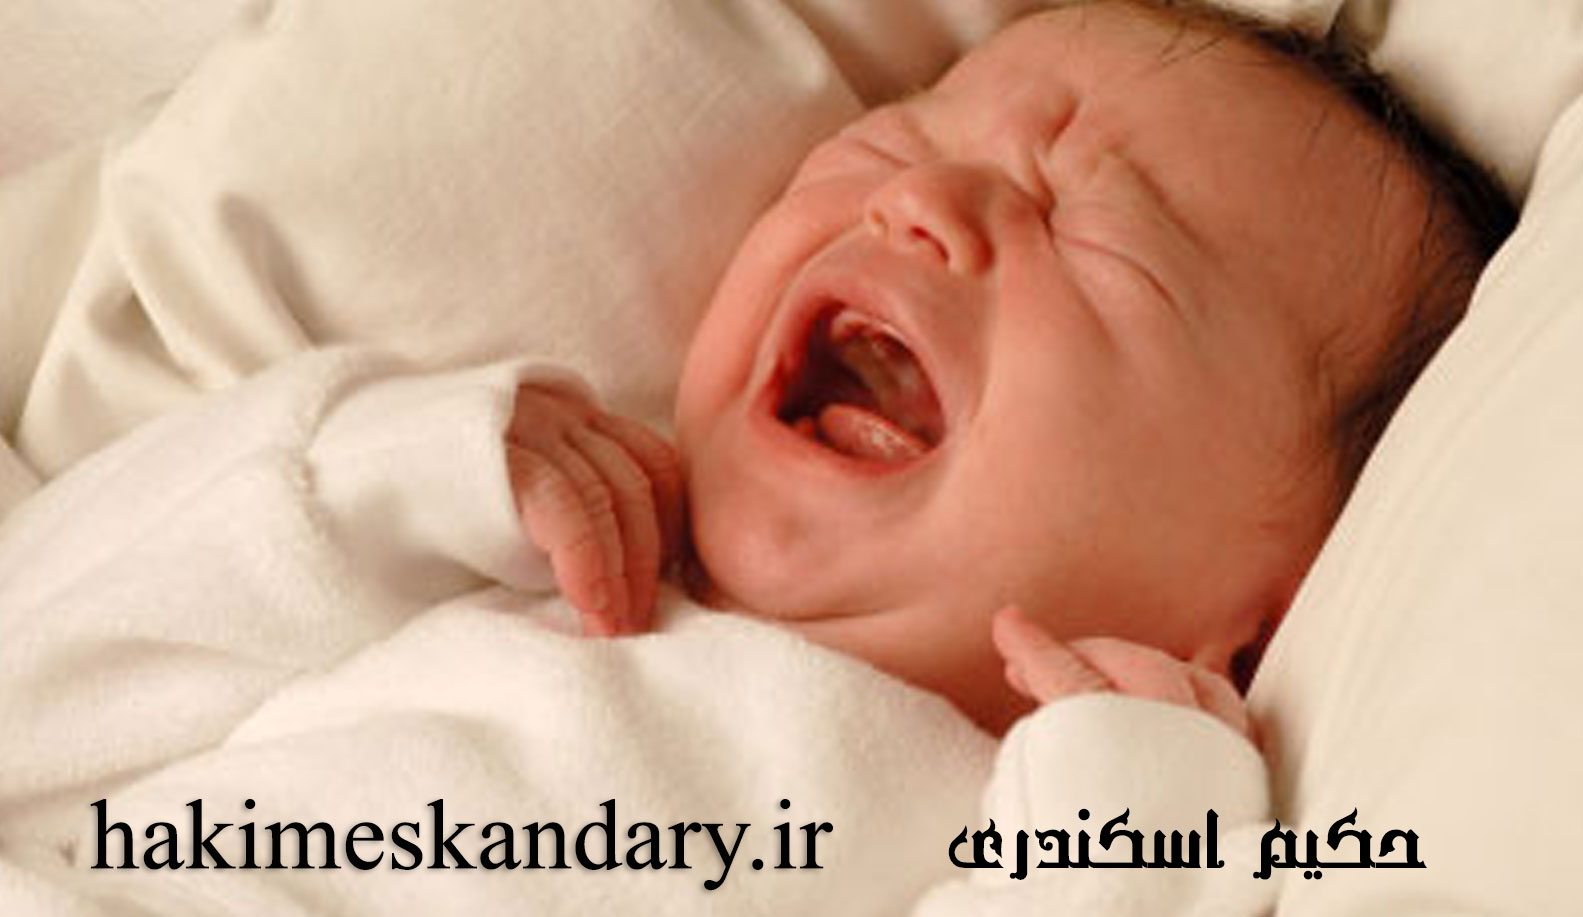 درمان گریه زیاد و بی خوابی نوزادان از منظر طب سنتی حکیم اسکندری